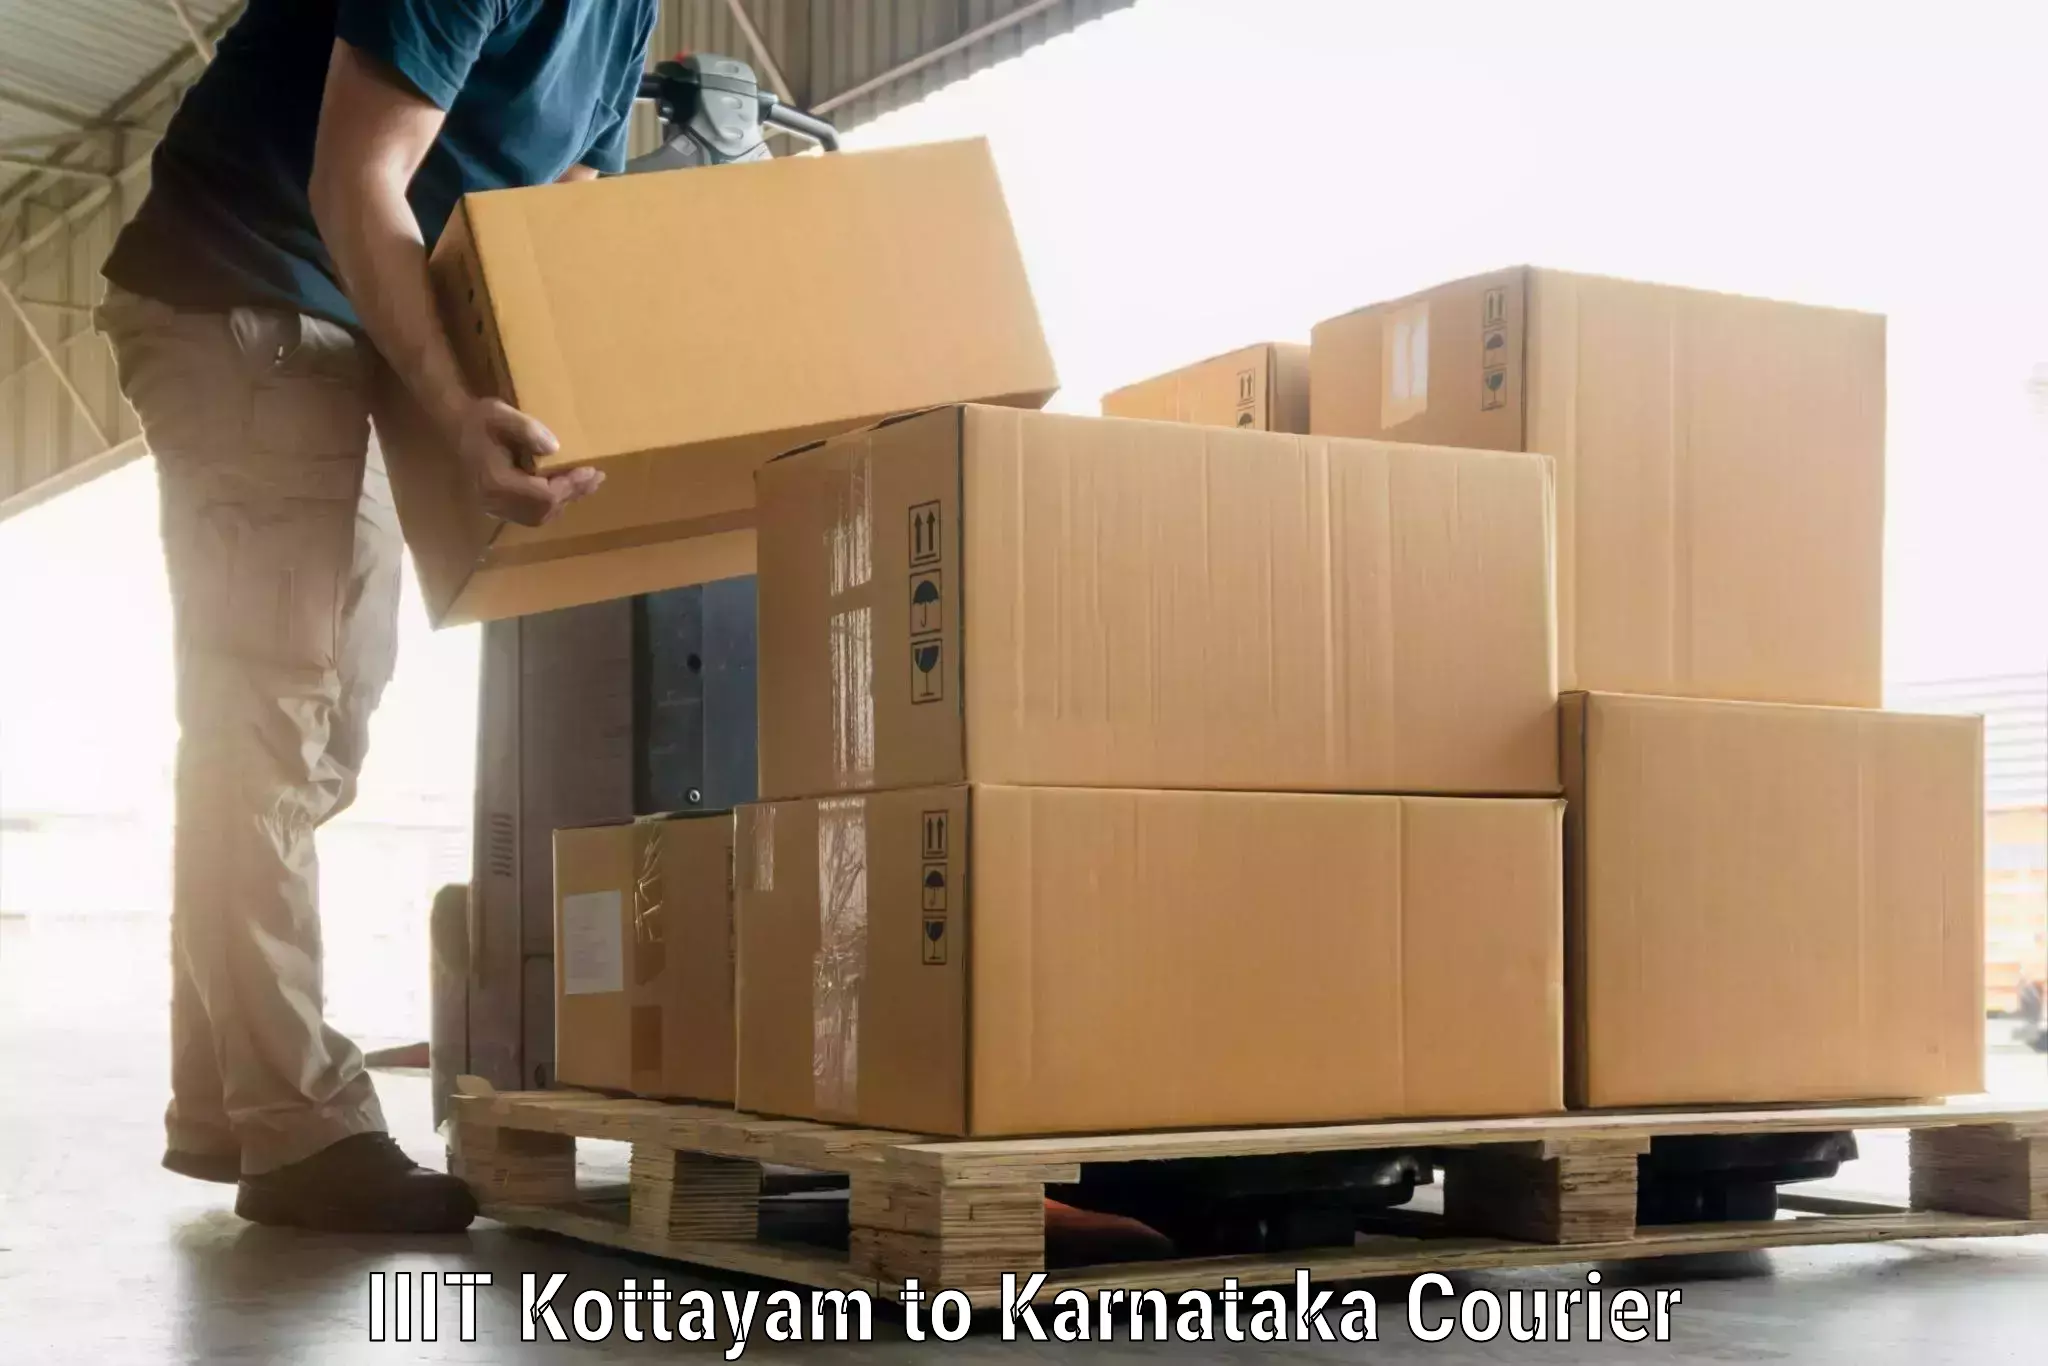 Luggage delivery system IIIT Kottayam to Ittigi